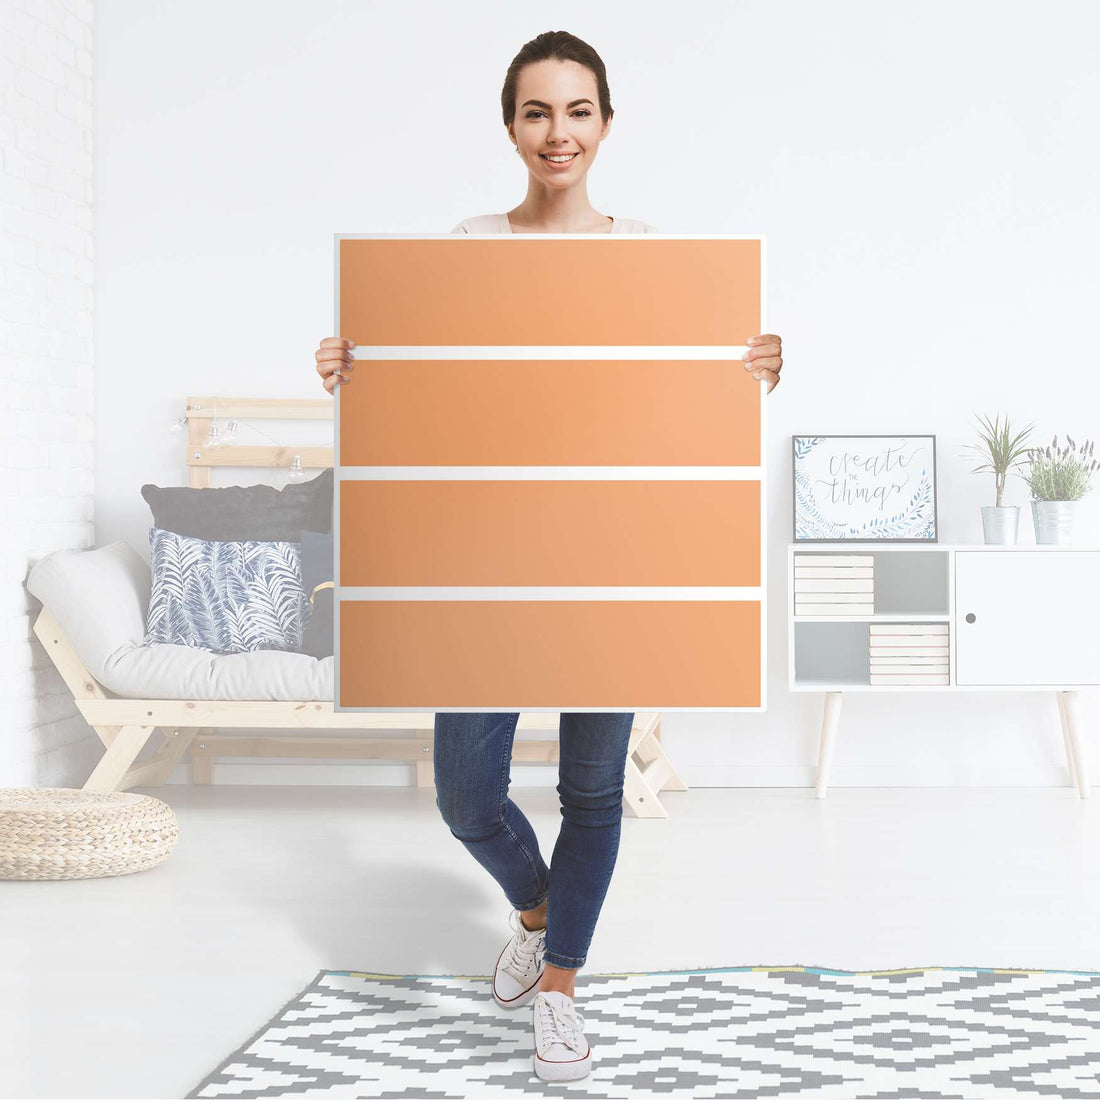 Folie für Möbel Orange Light - IKEA Malm Kommode 4 Schubladen - Folie